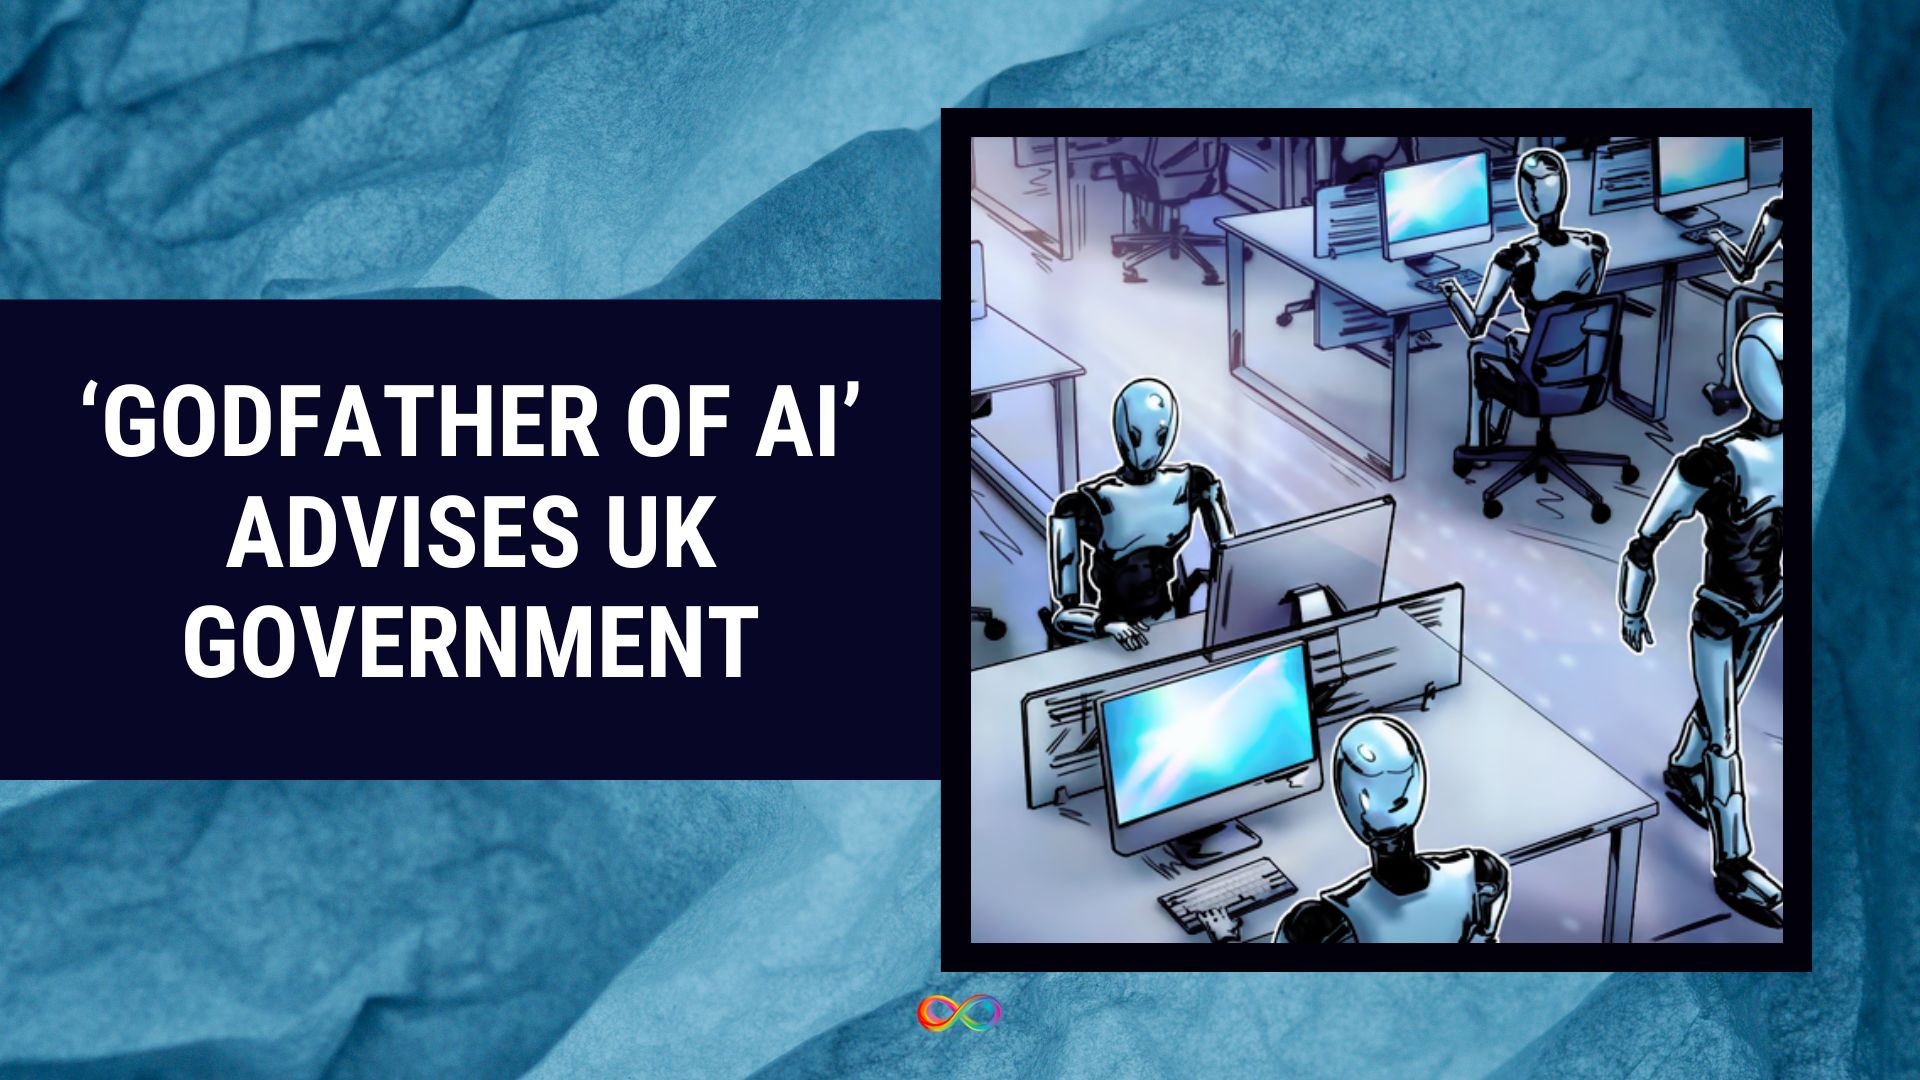 "پدرخوانده هوش مصنوعی" به دولت بریتانیا توصیه می کند که UBI را راه اندازی کند